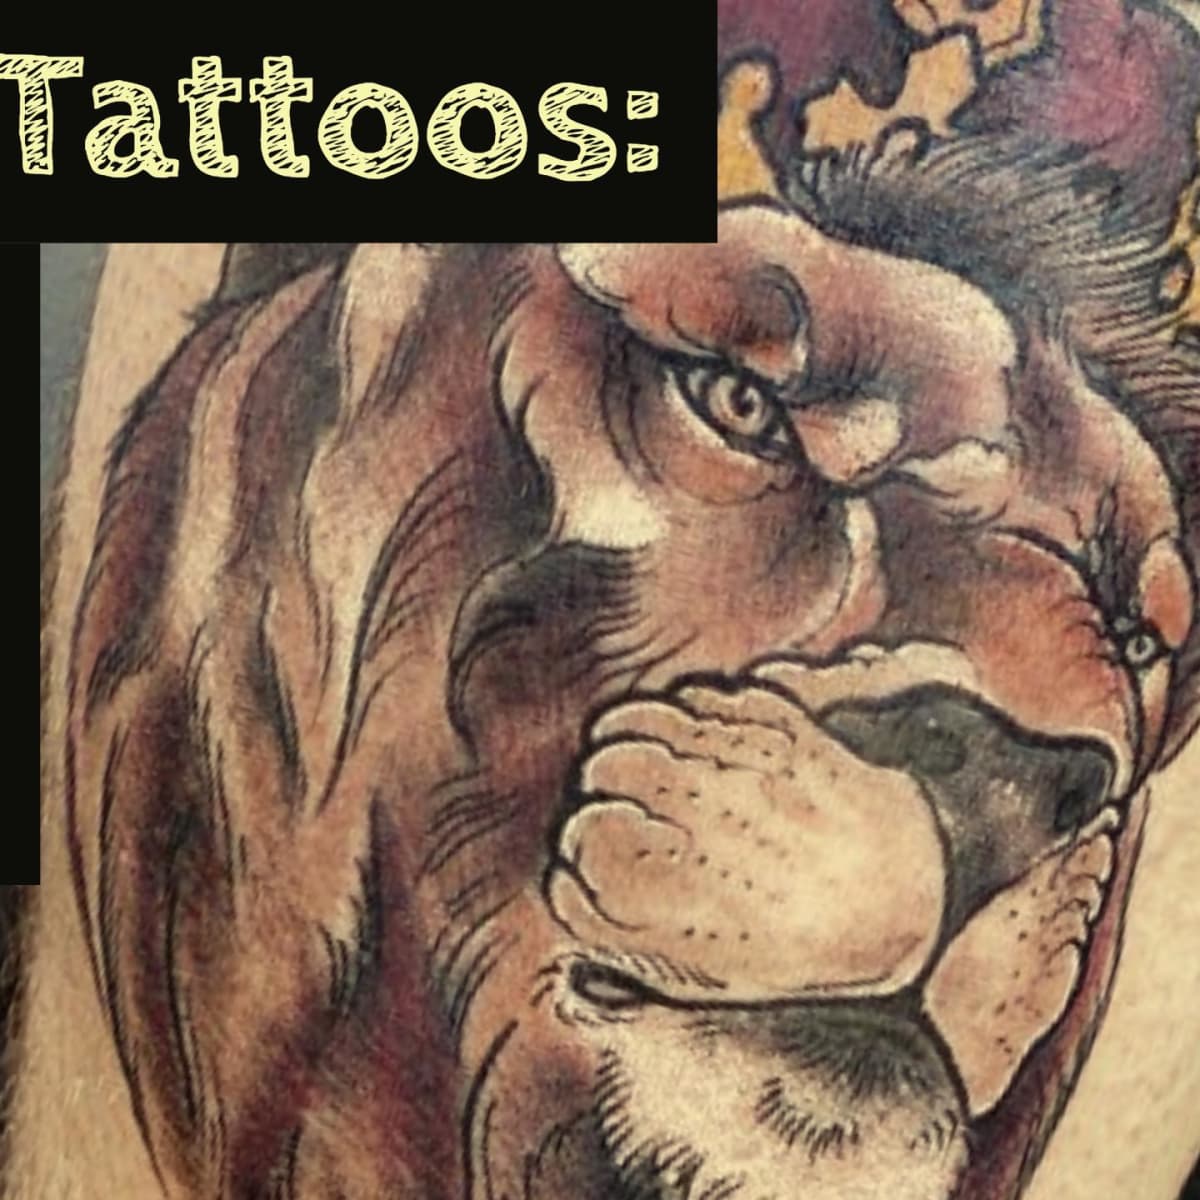   Pride of Lions Artist robertocarlosarttattoo   FOLLOW s  Tattoos familie Schwarze und  graue tattoos Ärmeltätowierungen